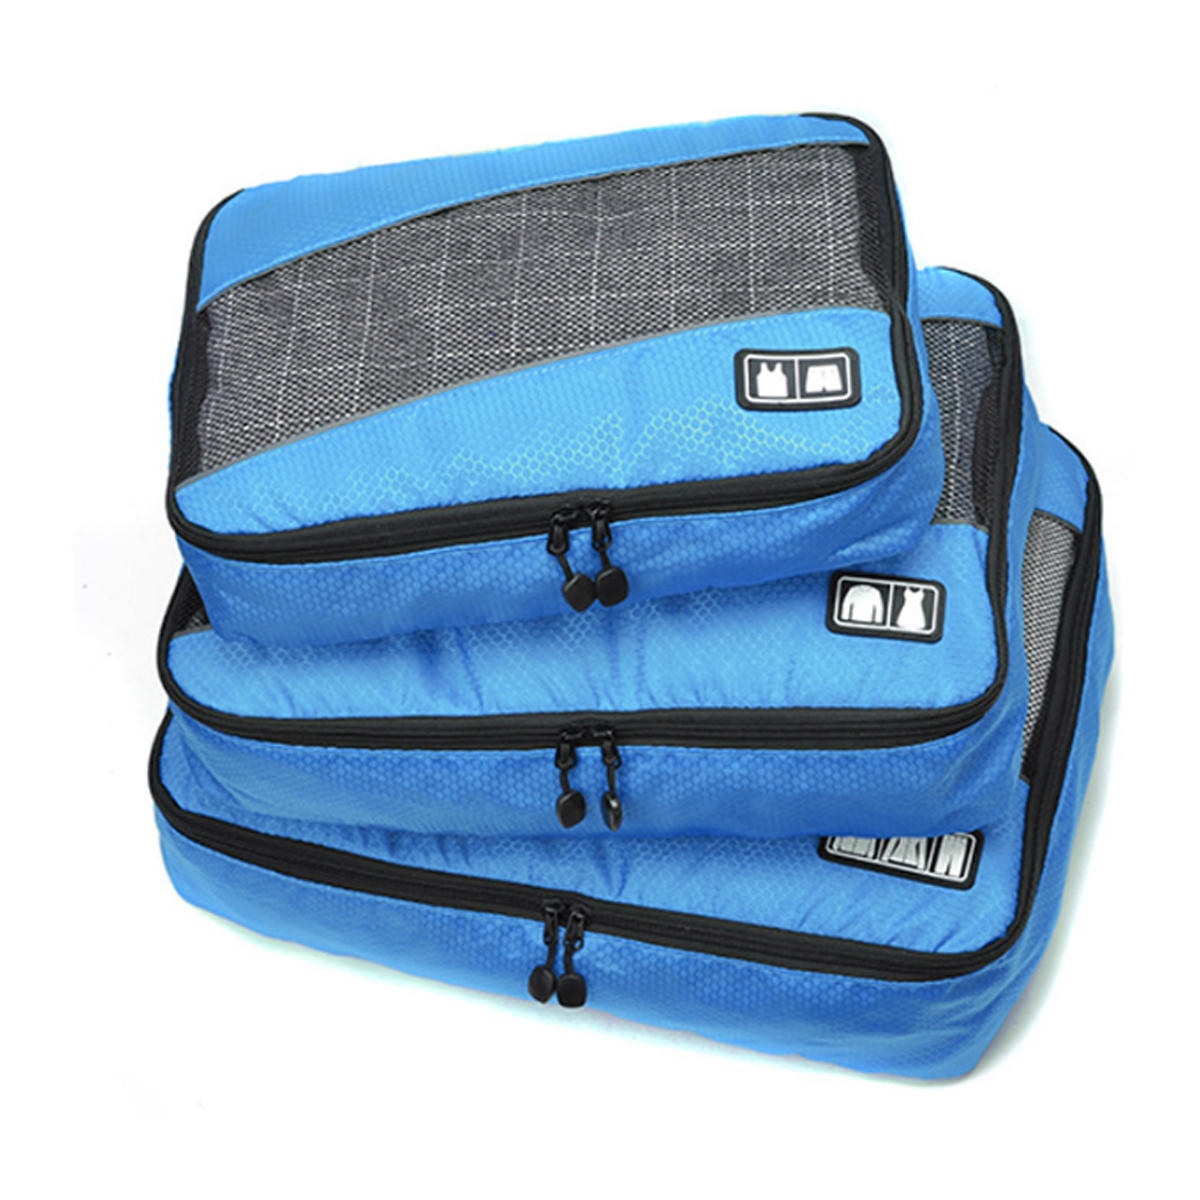 Conjunto de 3 sacos de armazenamento à prova d'água para roupas íntimas, roupas e produtos de higiene pessoal durante viagens